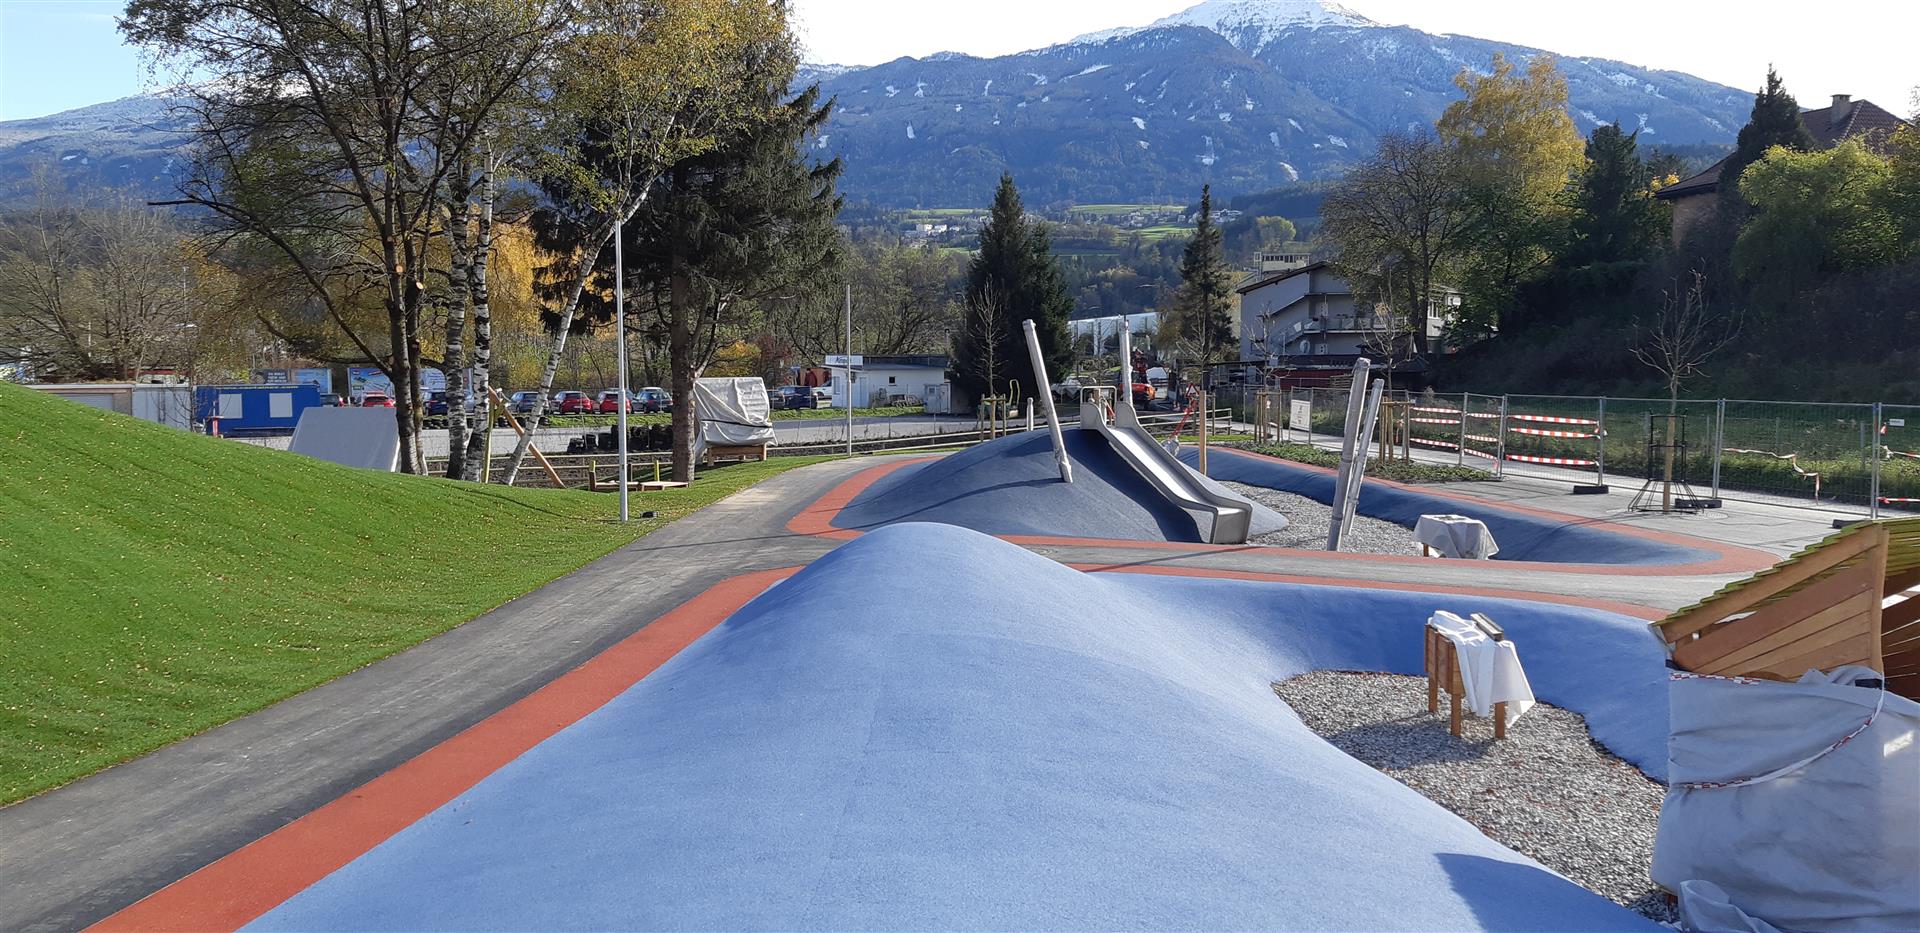 Freizeitpark, Innsbruck - Civil engineering